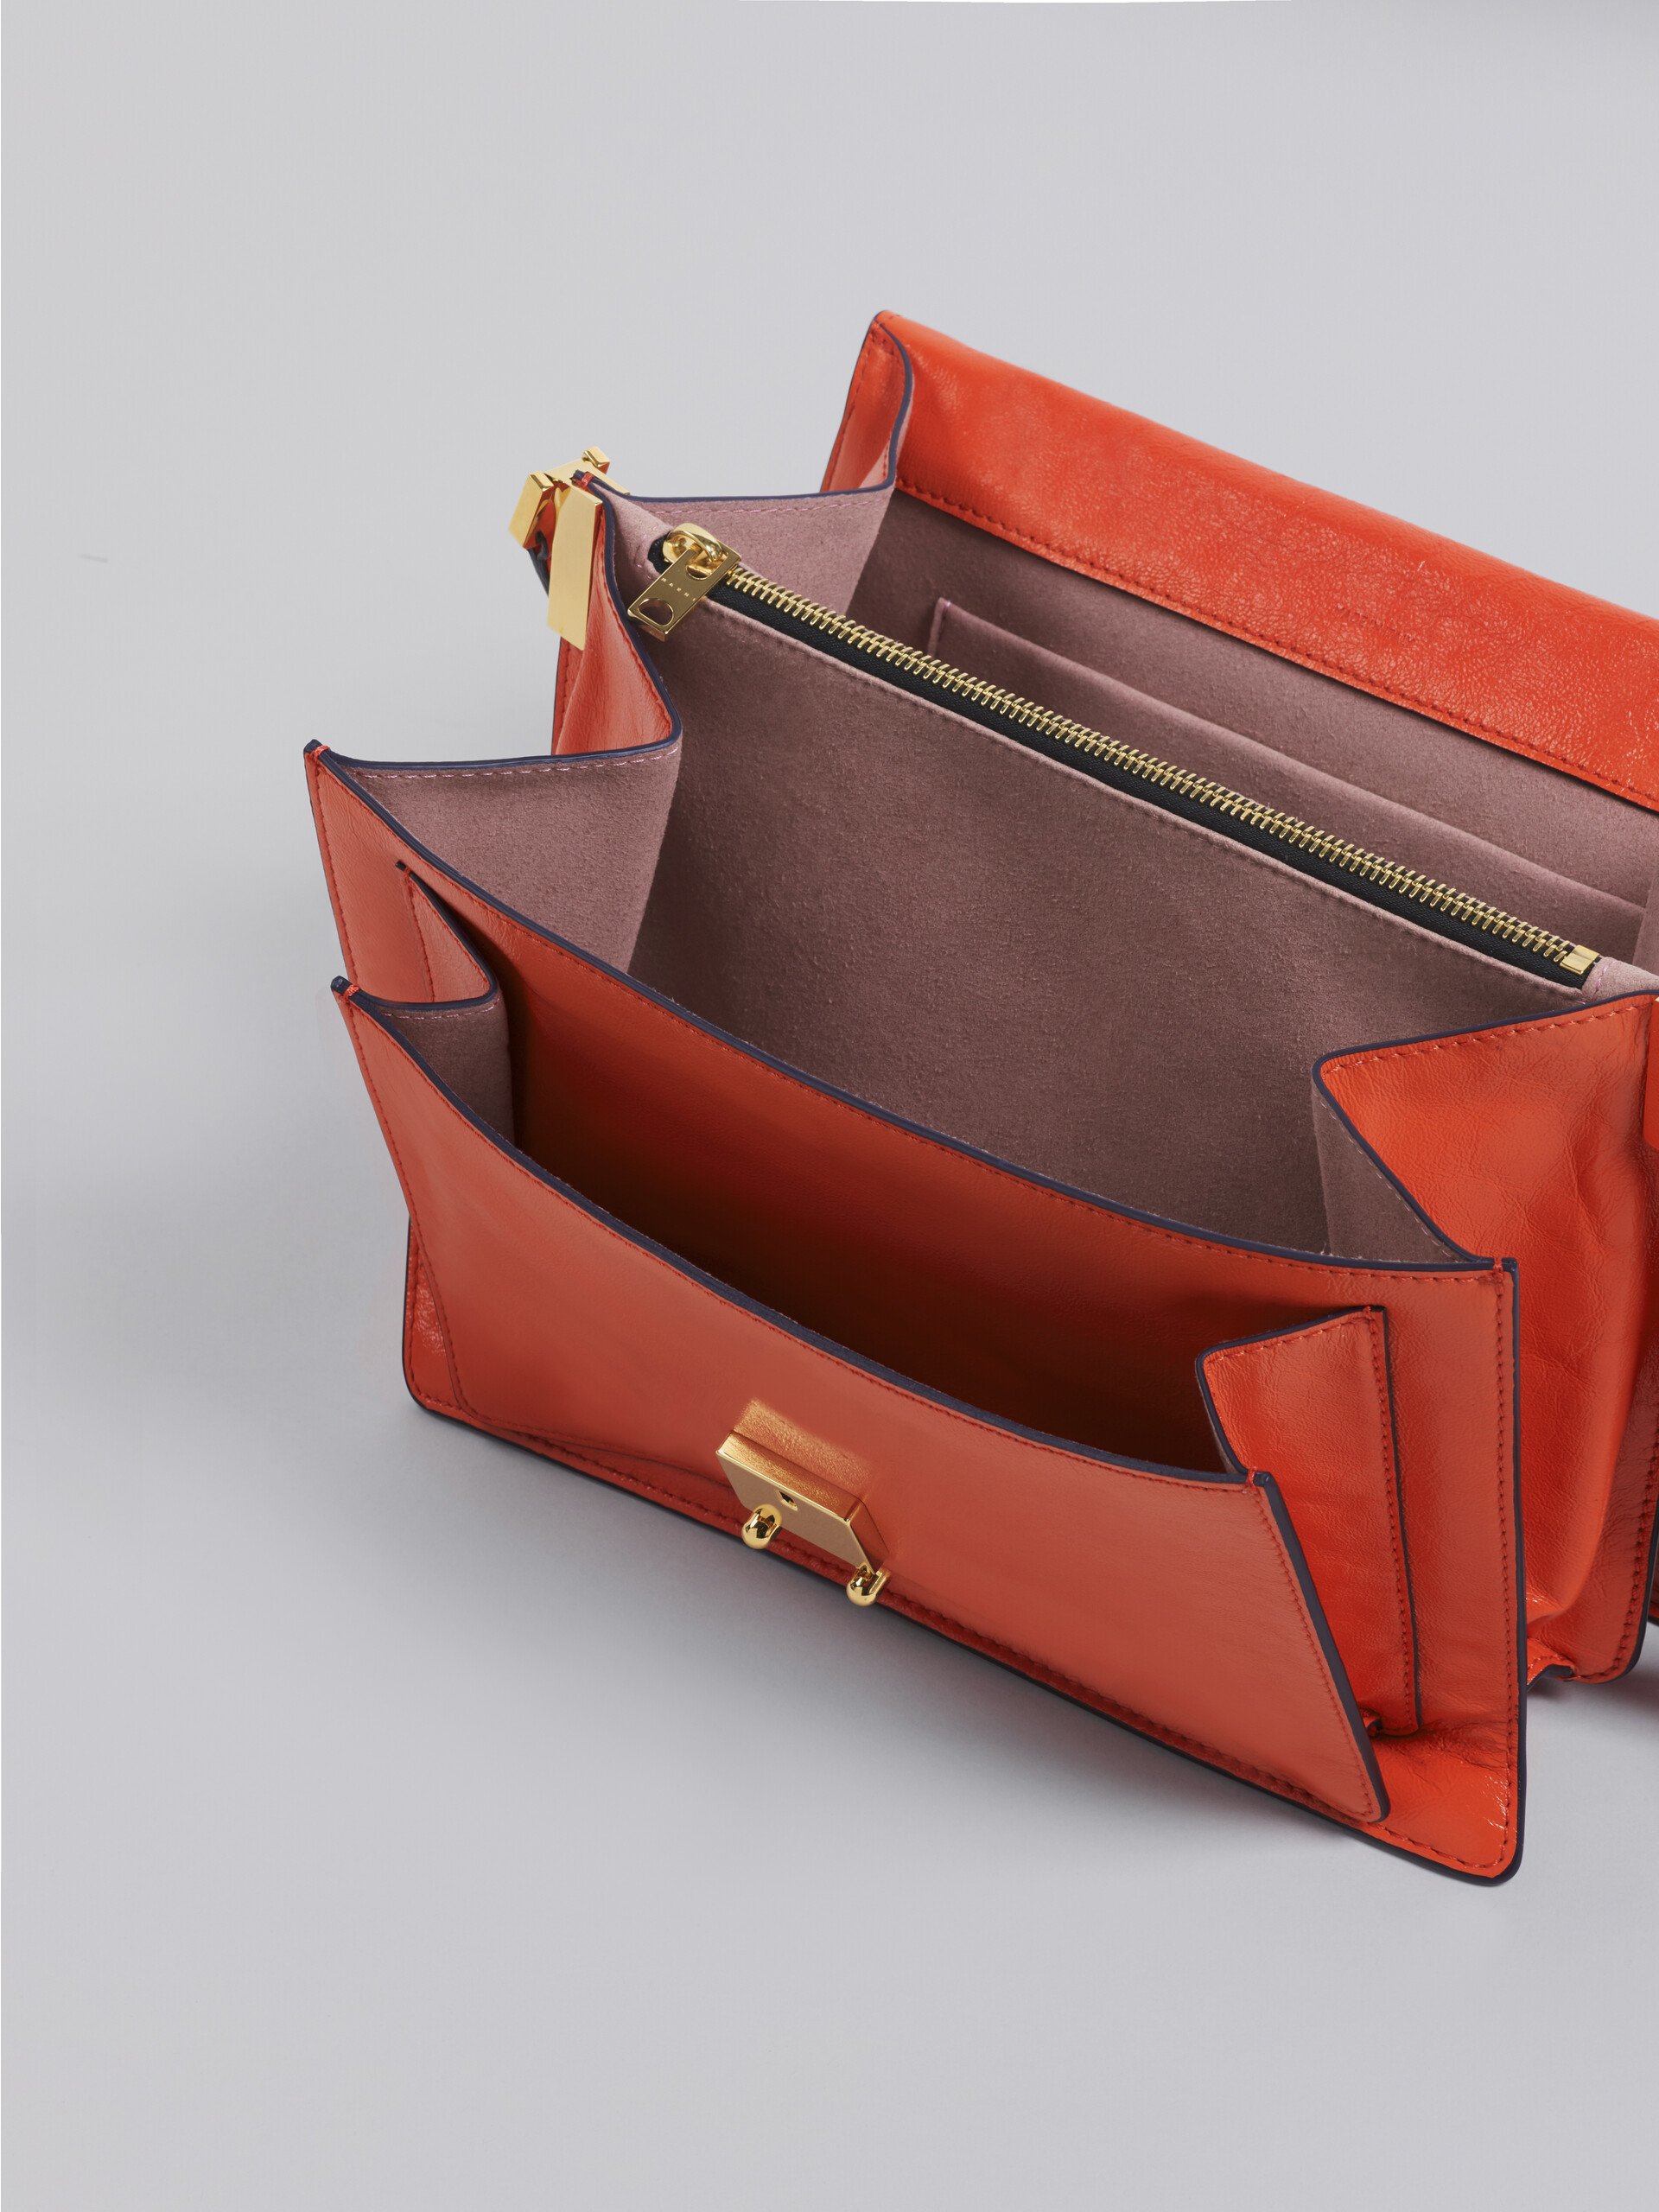 TRUNK SOFT large bag in orange leather - Shoulder Bag - Image 3